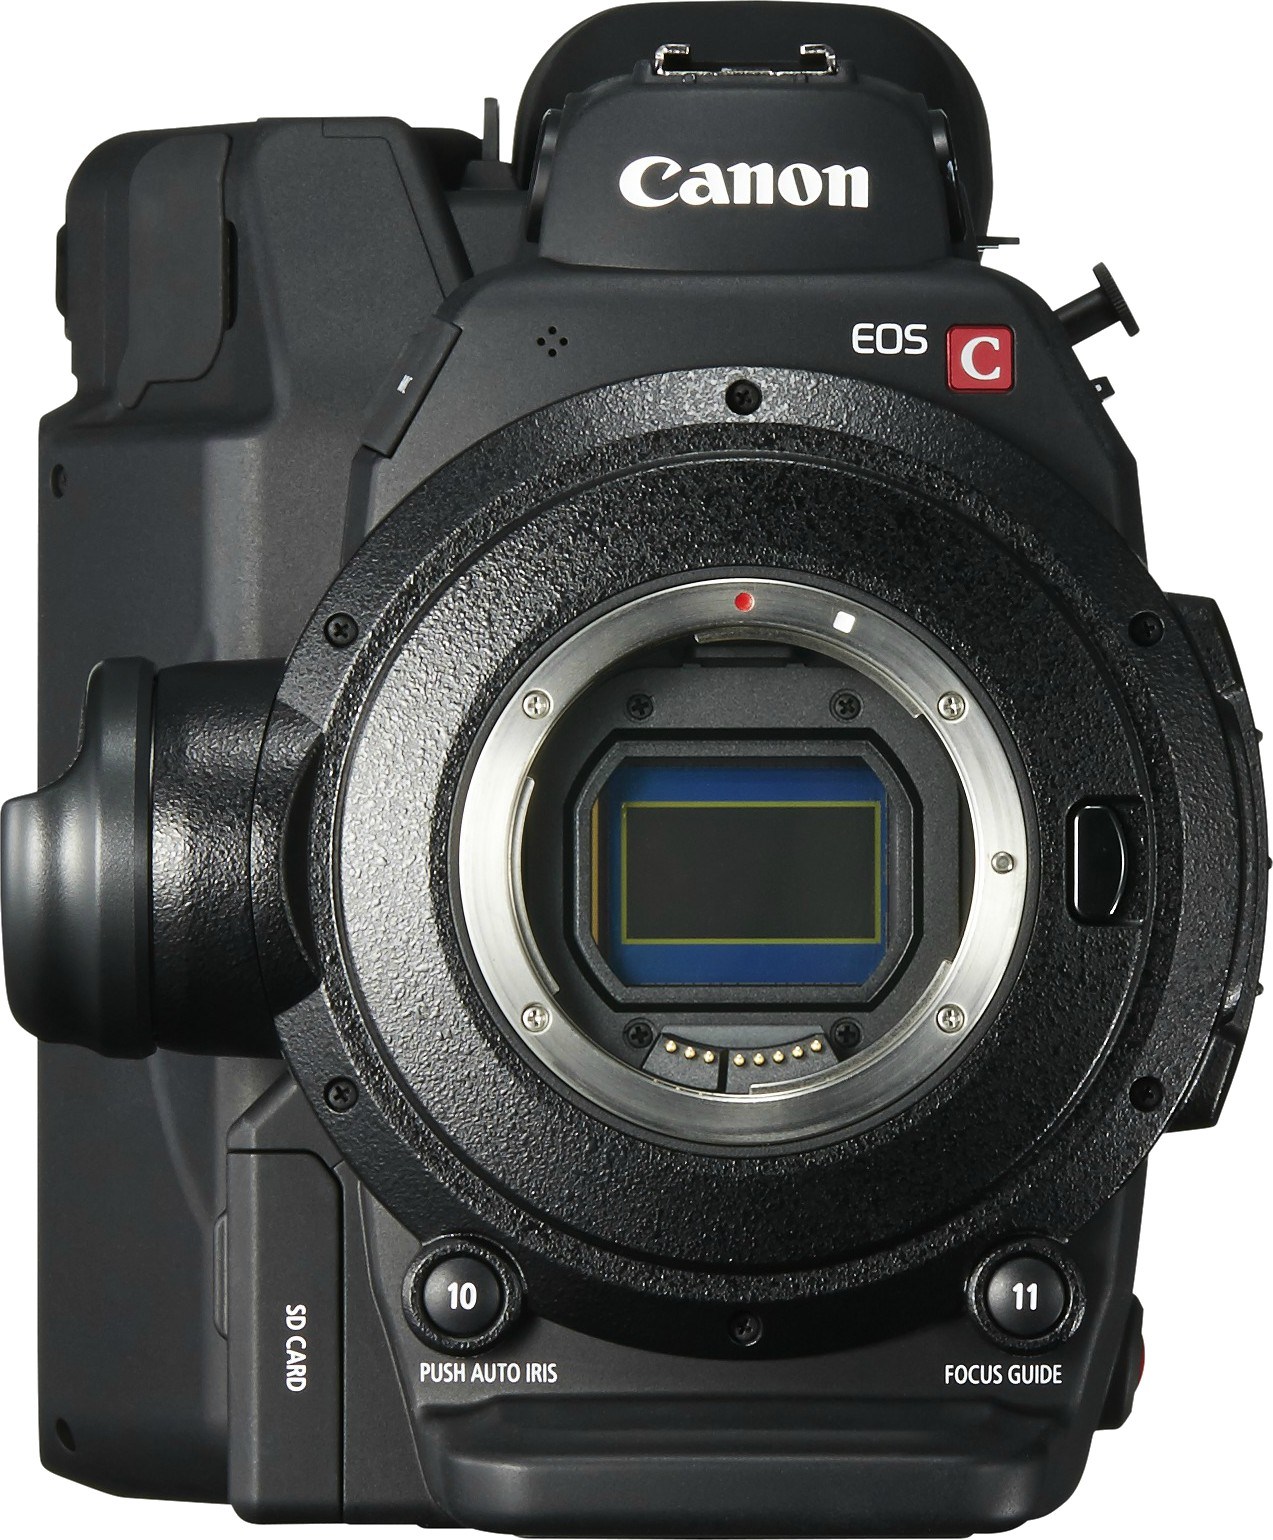 p 1 5 3 6 9 15369 camera canon eos c300 mark ii